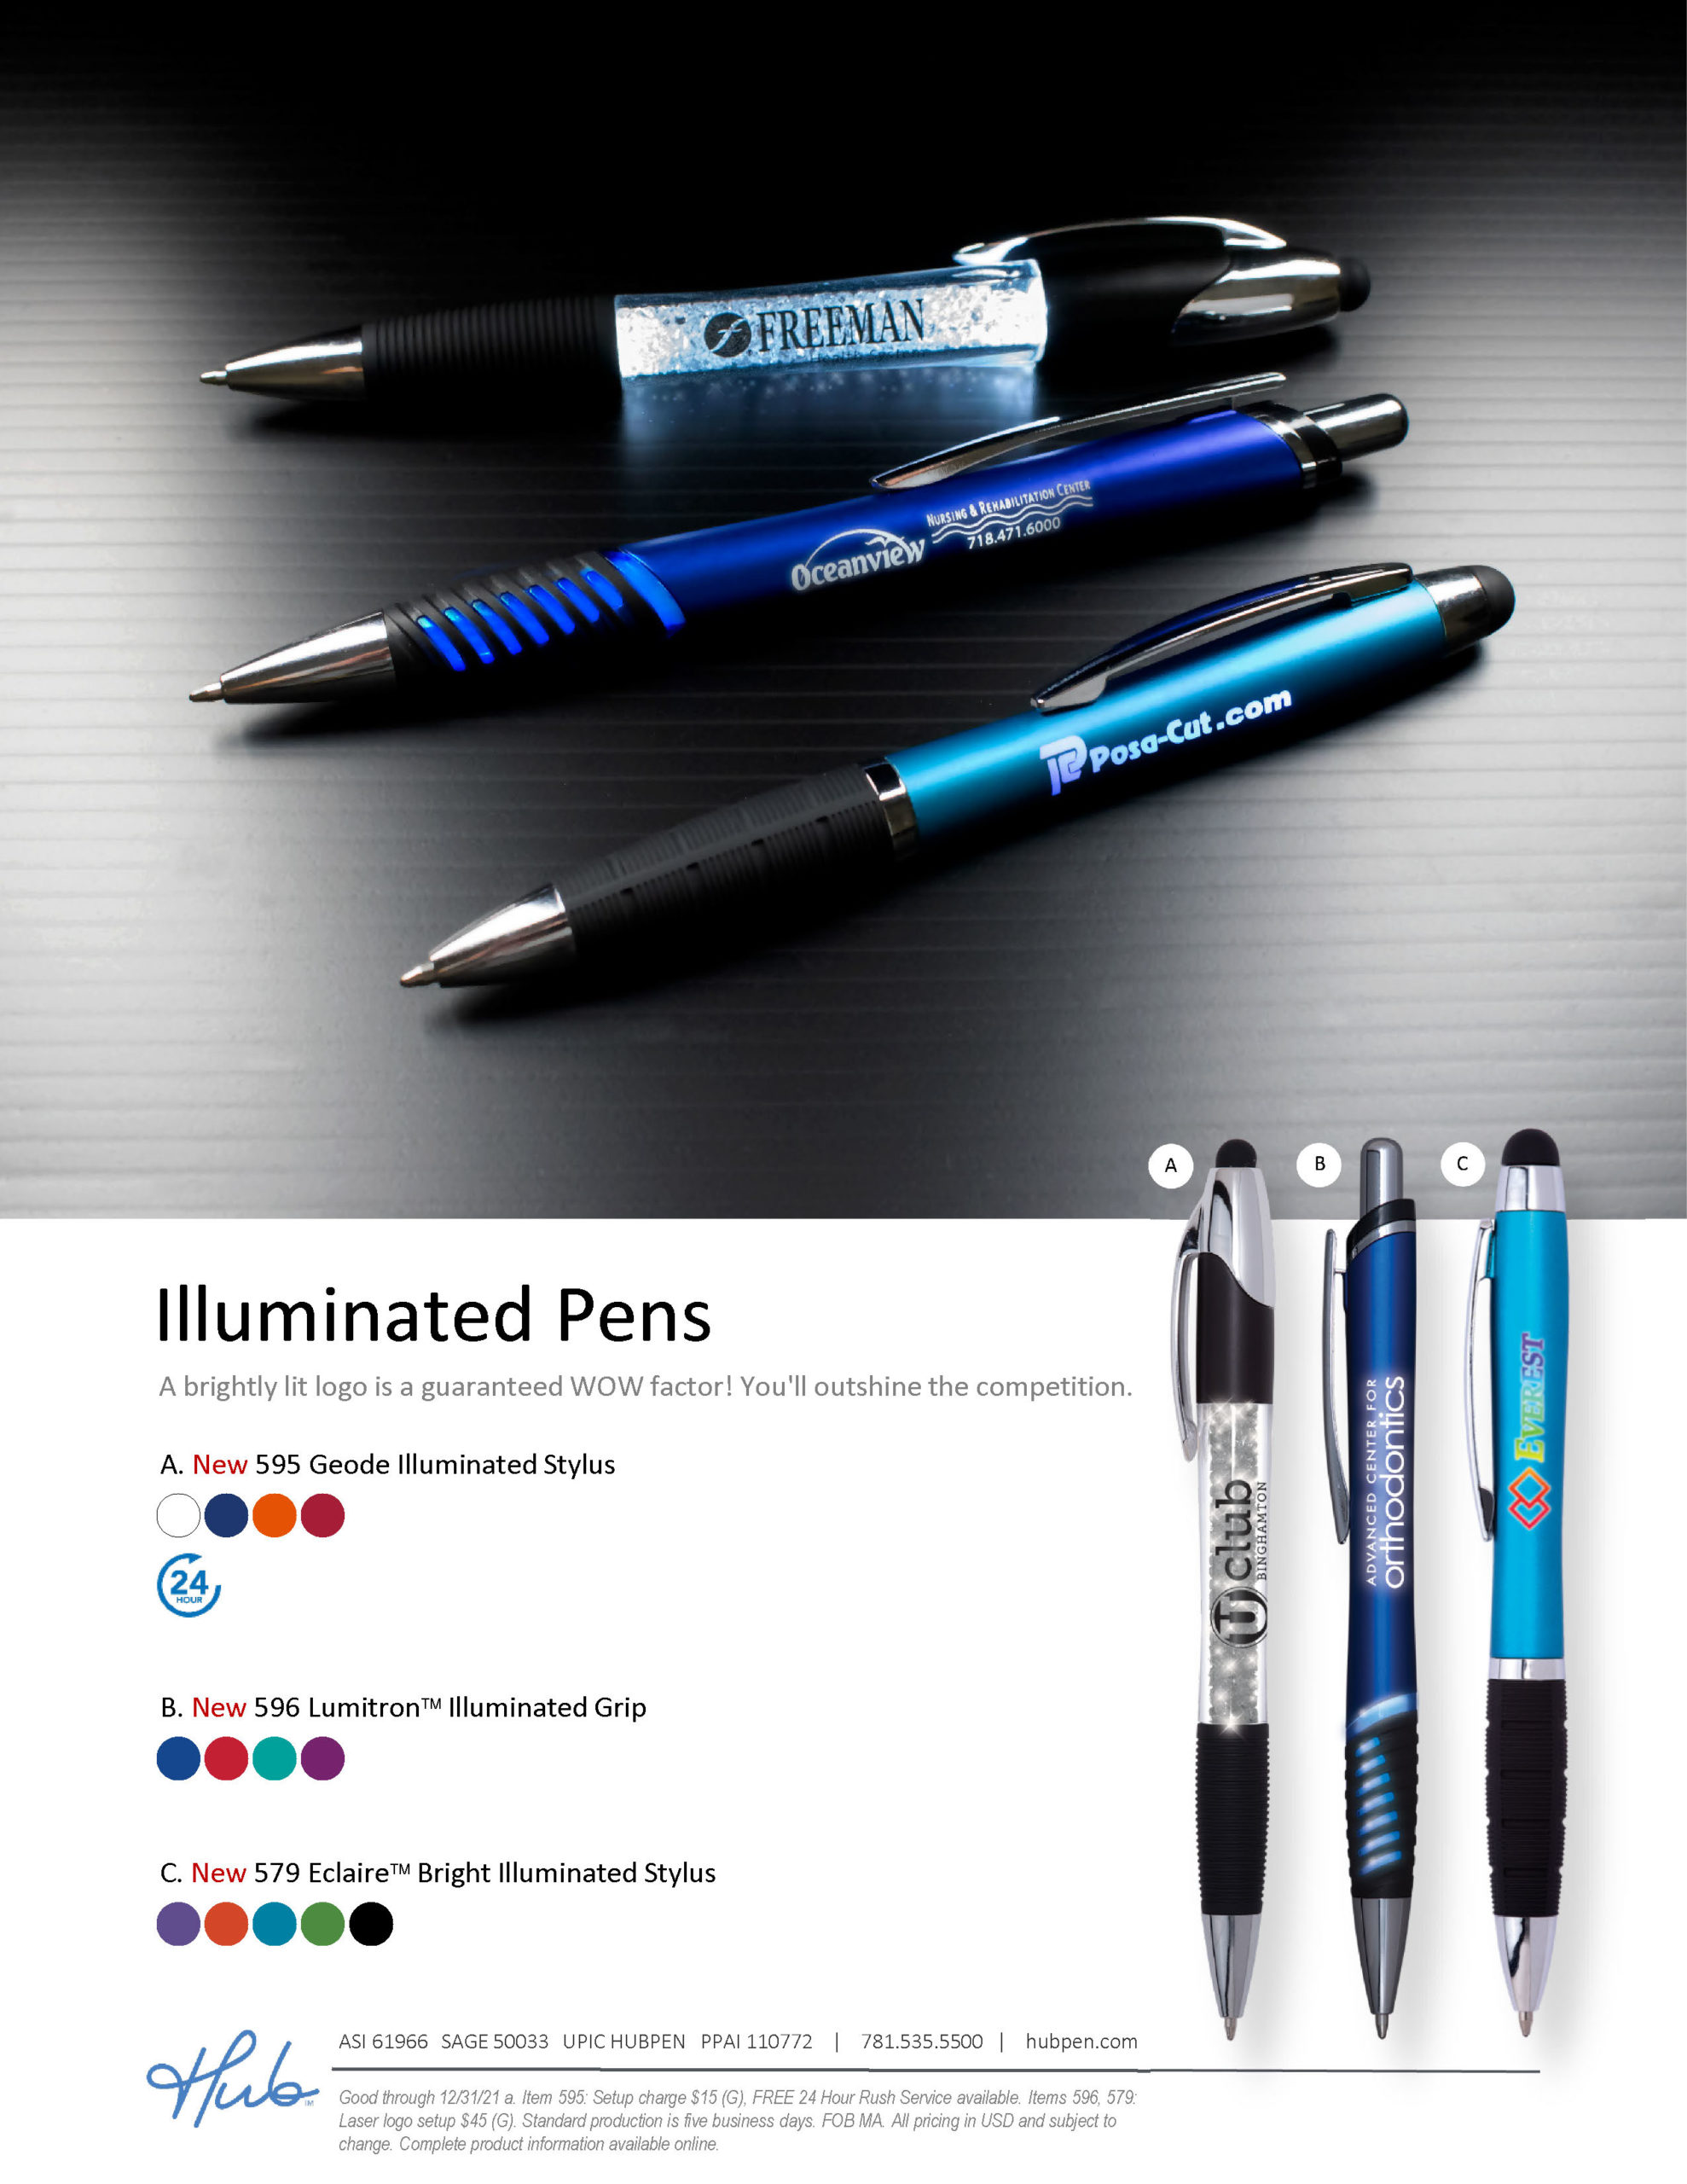 Illuminated pens flyer (Hub branded)